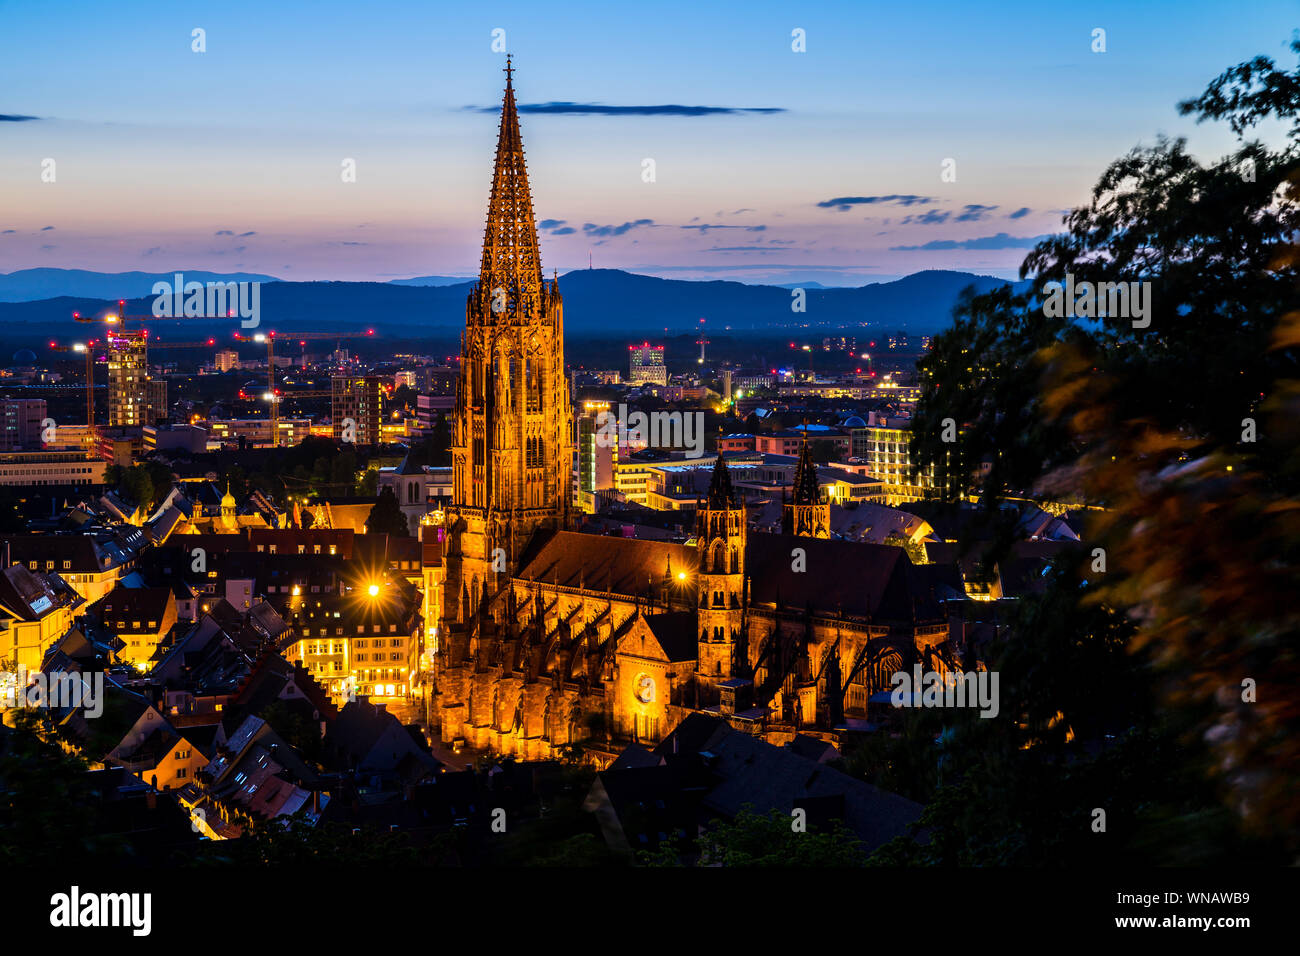 Germania, paesaggio e sullo skyline di Freiburg im Breisgau con landmark minster o chiamato muenster chiesa nella magica atmosfera del crepuscolo dopo il tramonto a du Foto Stock